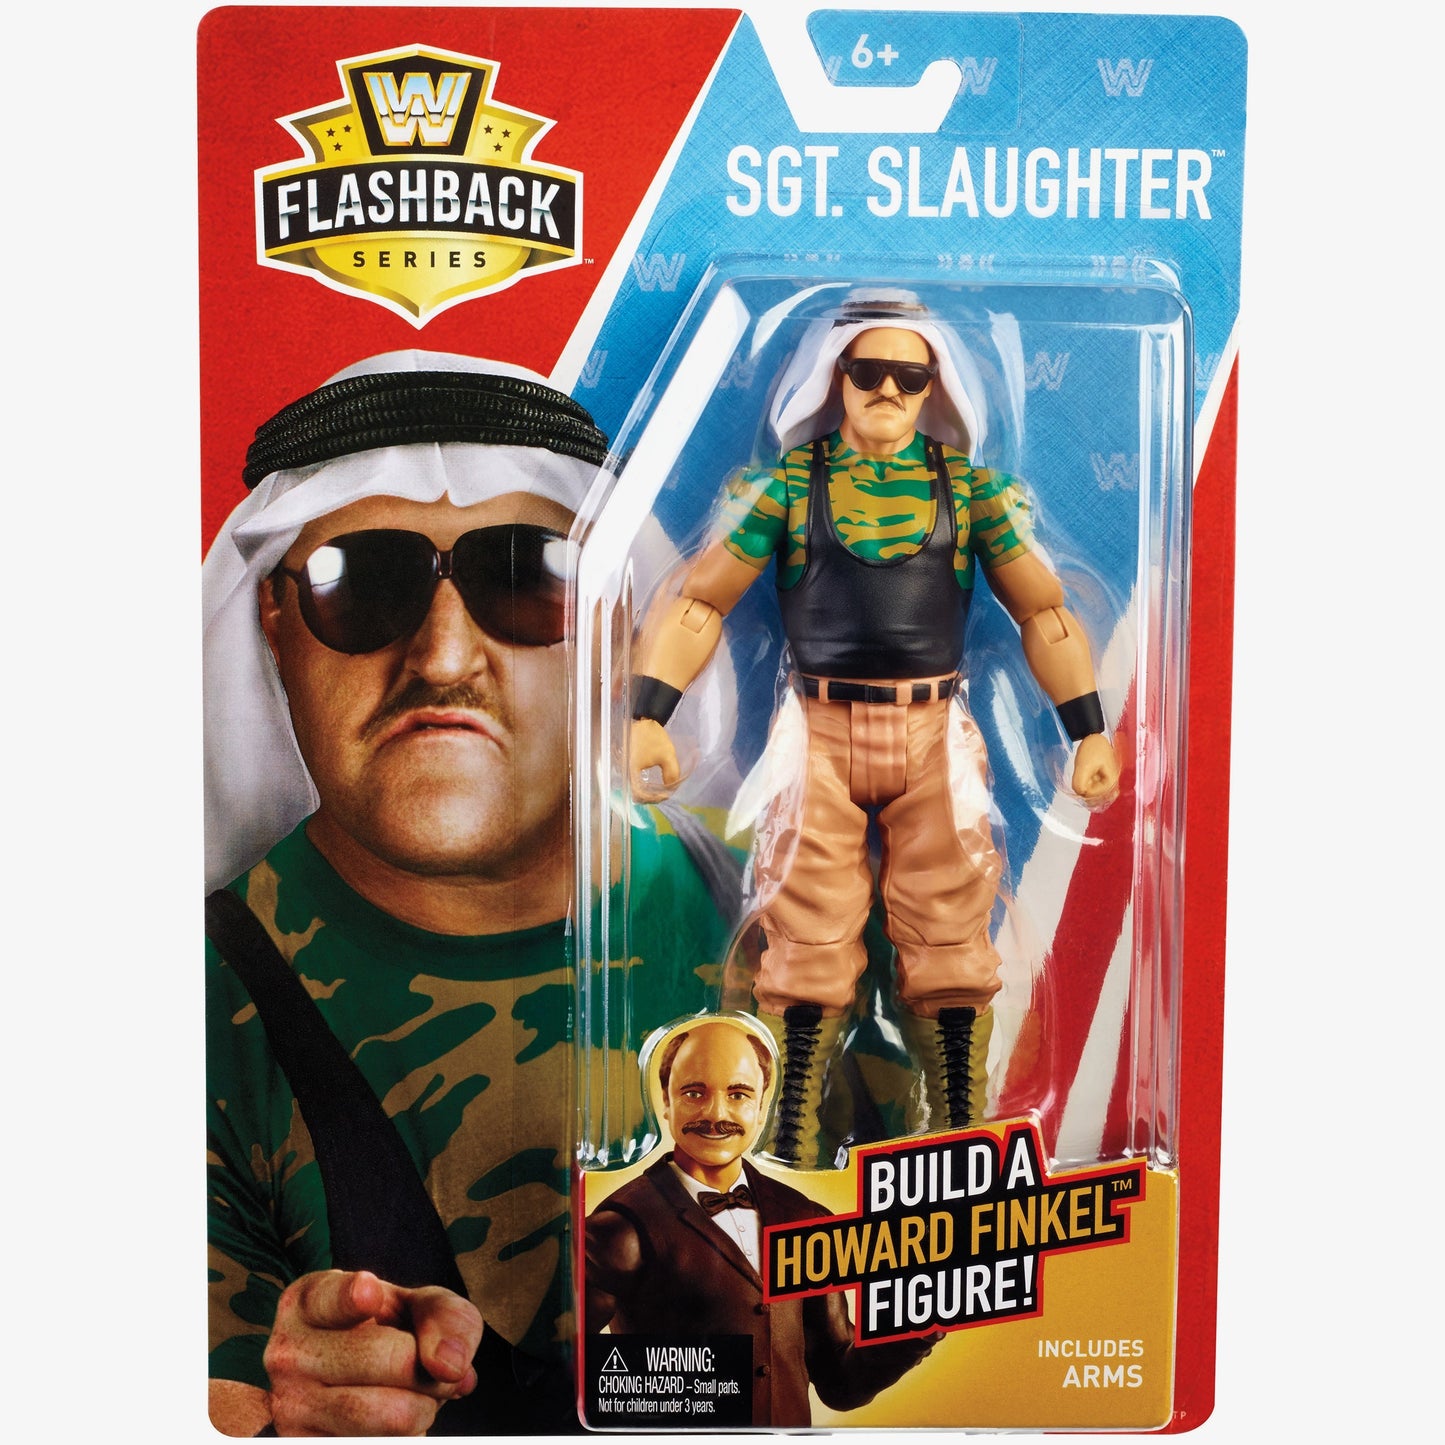 Sgt Slaughter - WWE Flashback Basic Series #1 (Build Howard Finkel)